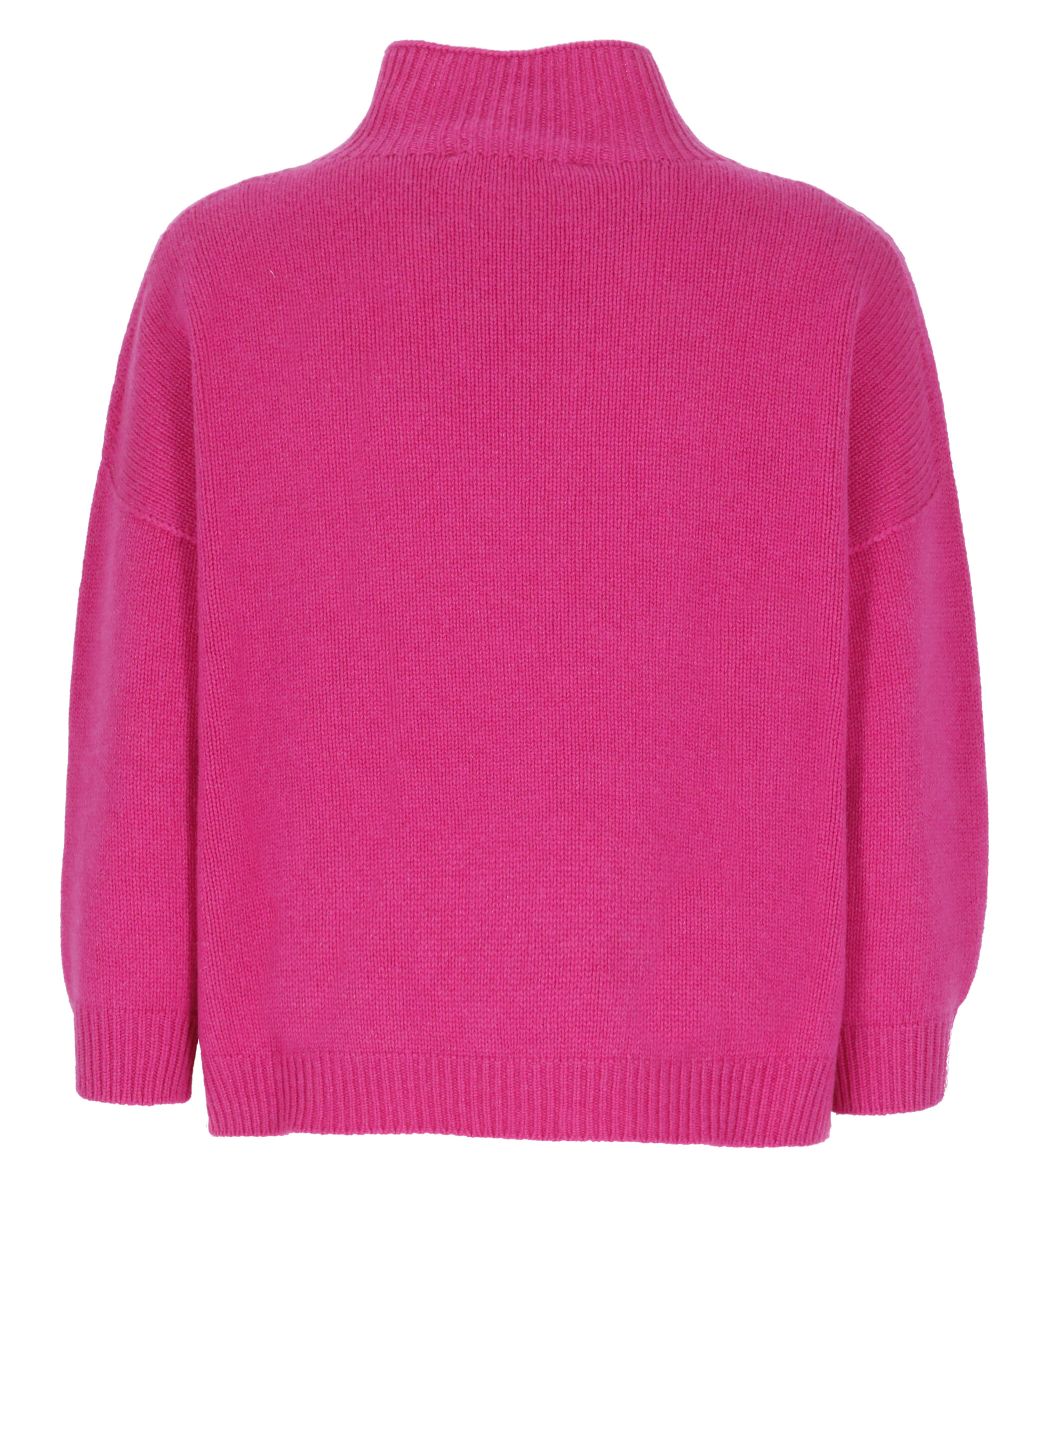 Crop sweater